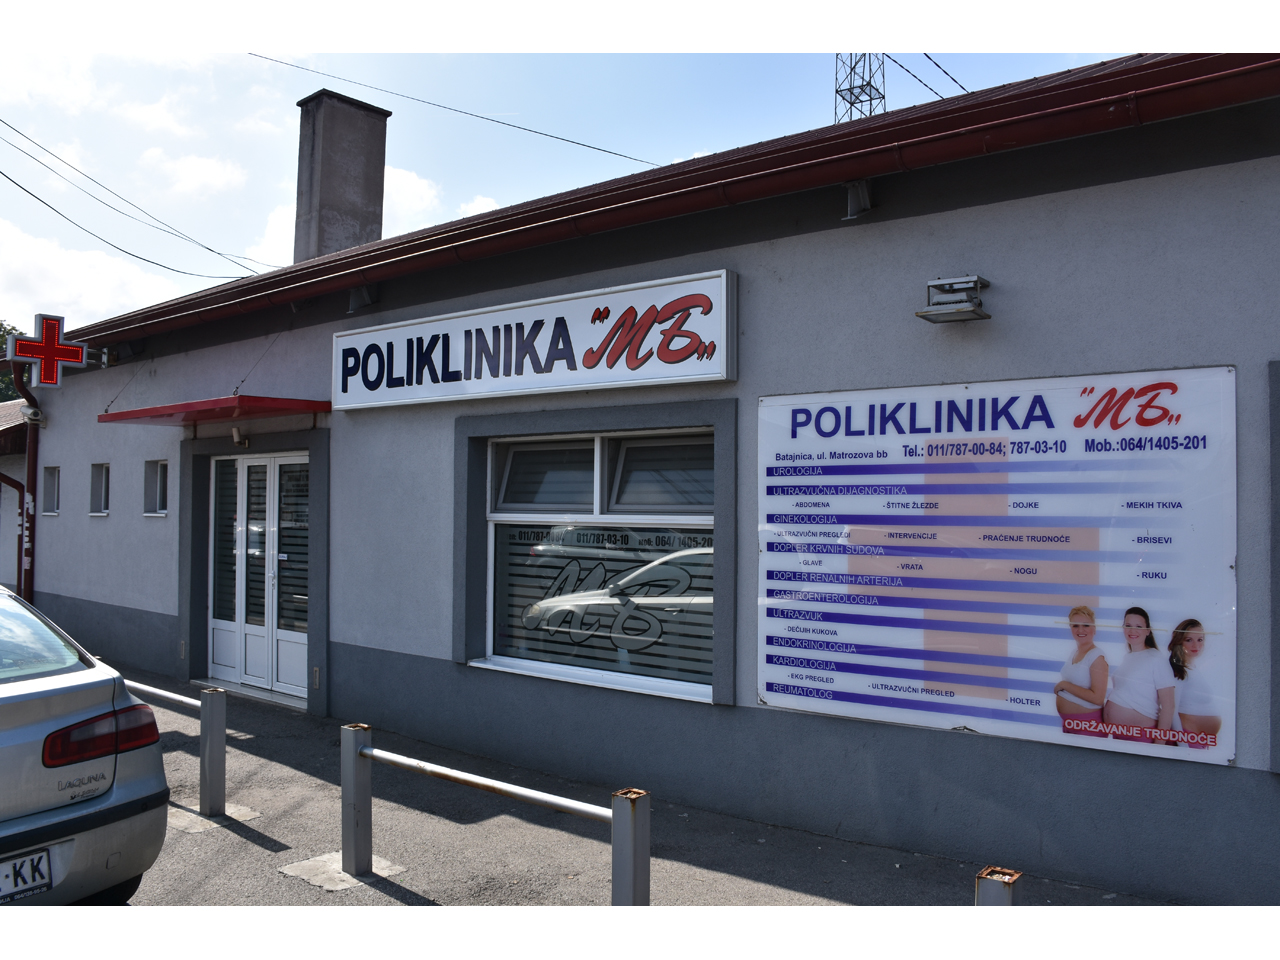 Slika 1 - POLIKLINIKA MB Poliklinike Beograd